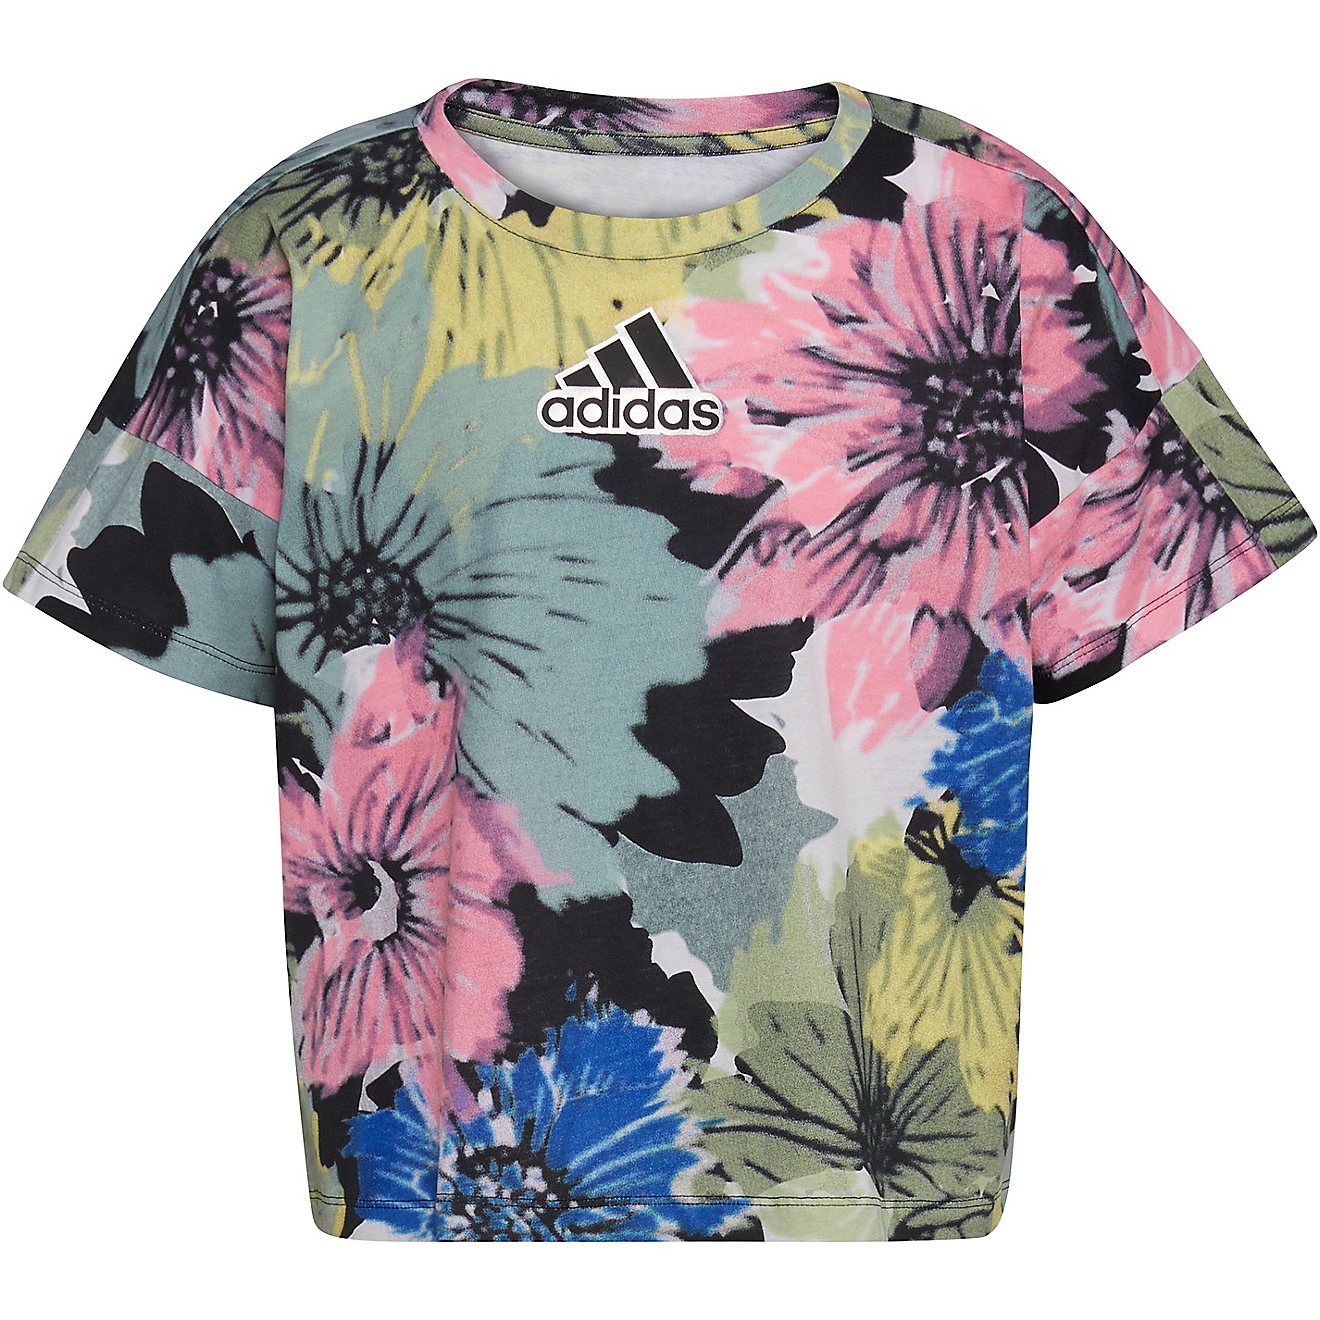 Geven Bestaan vacht adidas Girls' All Over Print Short Sleeve T-shirt | Academy